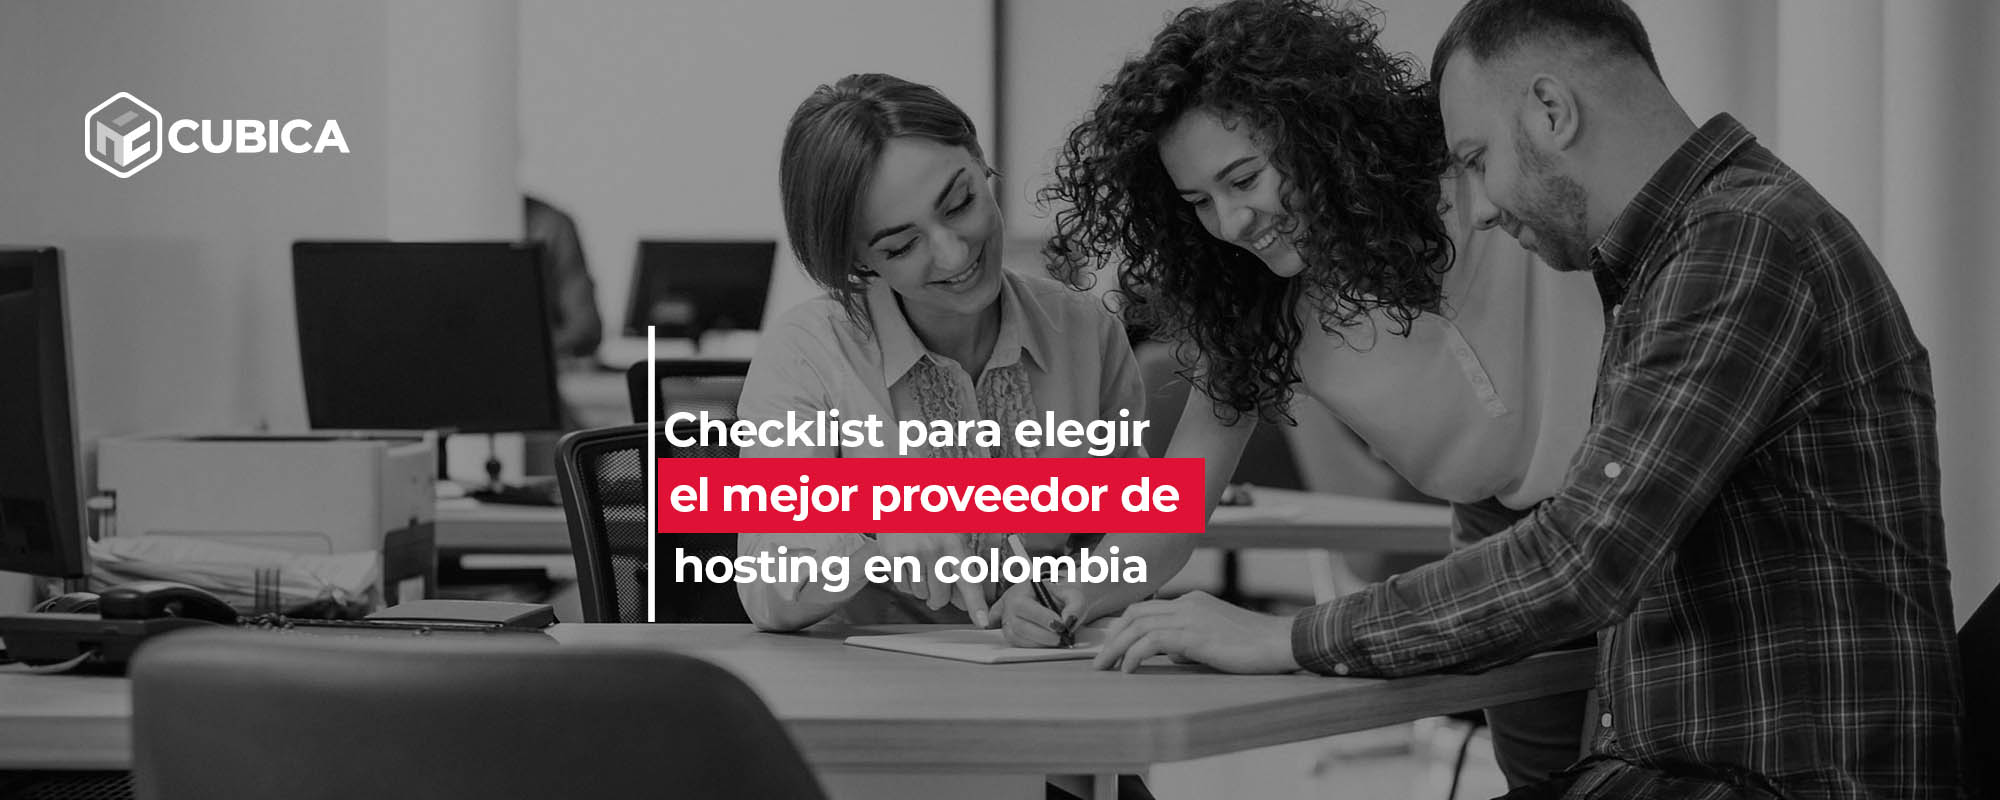 Checklist para elegir el mejor proveedor de hosting en Colombia